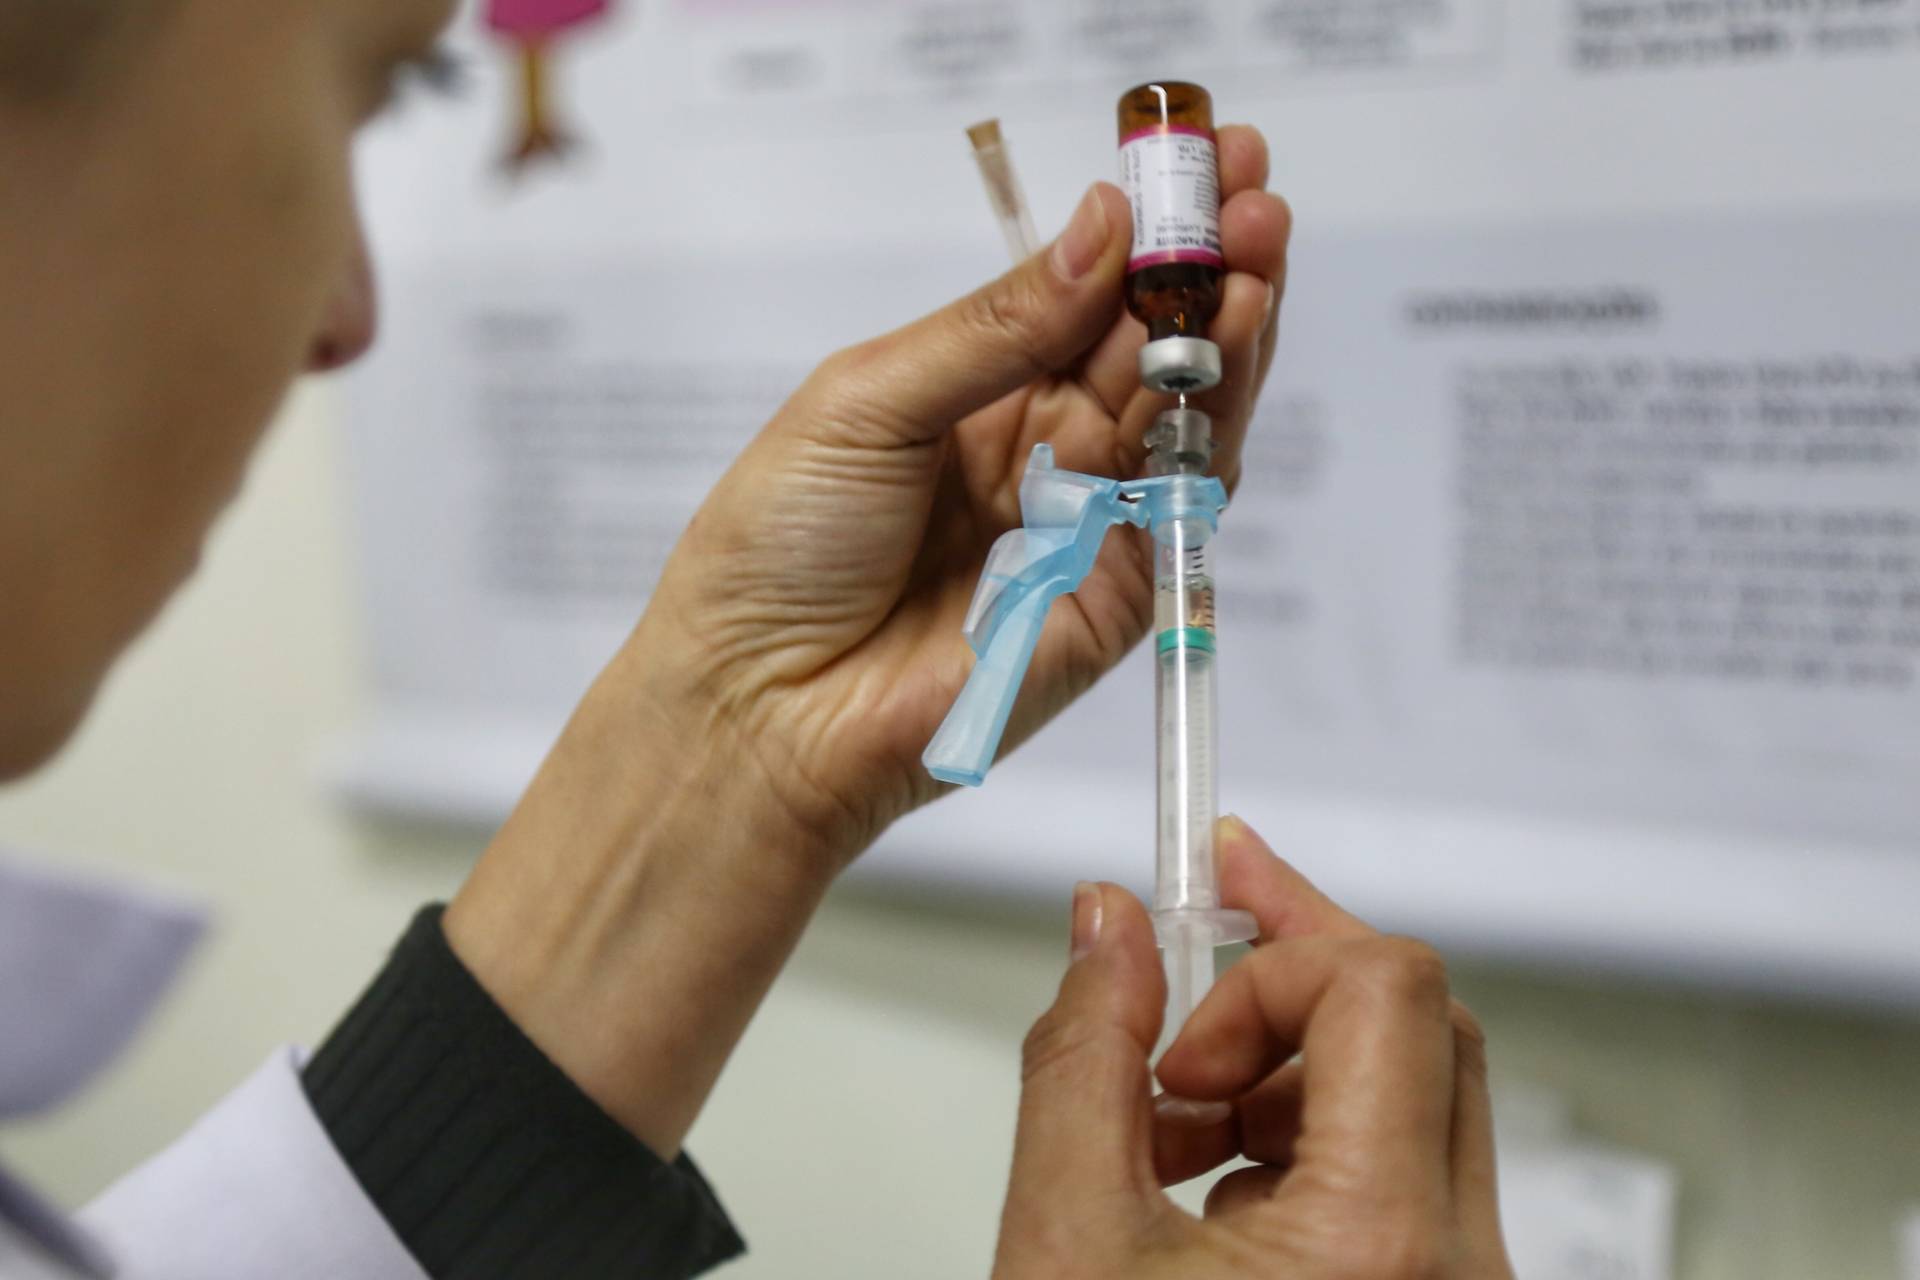  Municípios devem intensificar vacinação contra sarampo e poliomielite